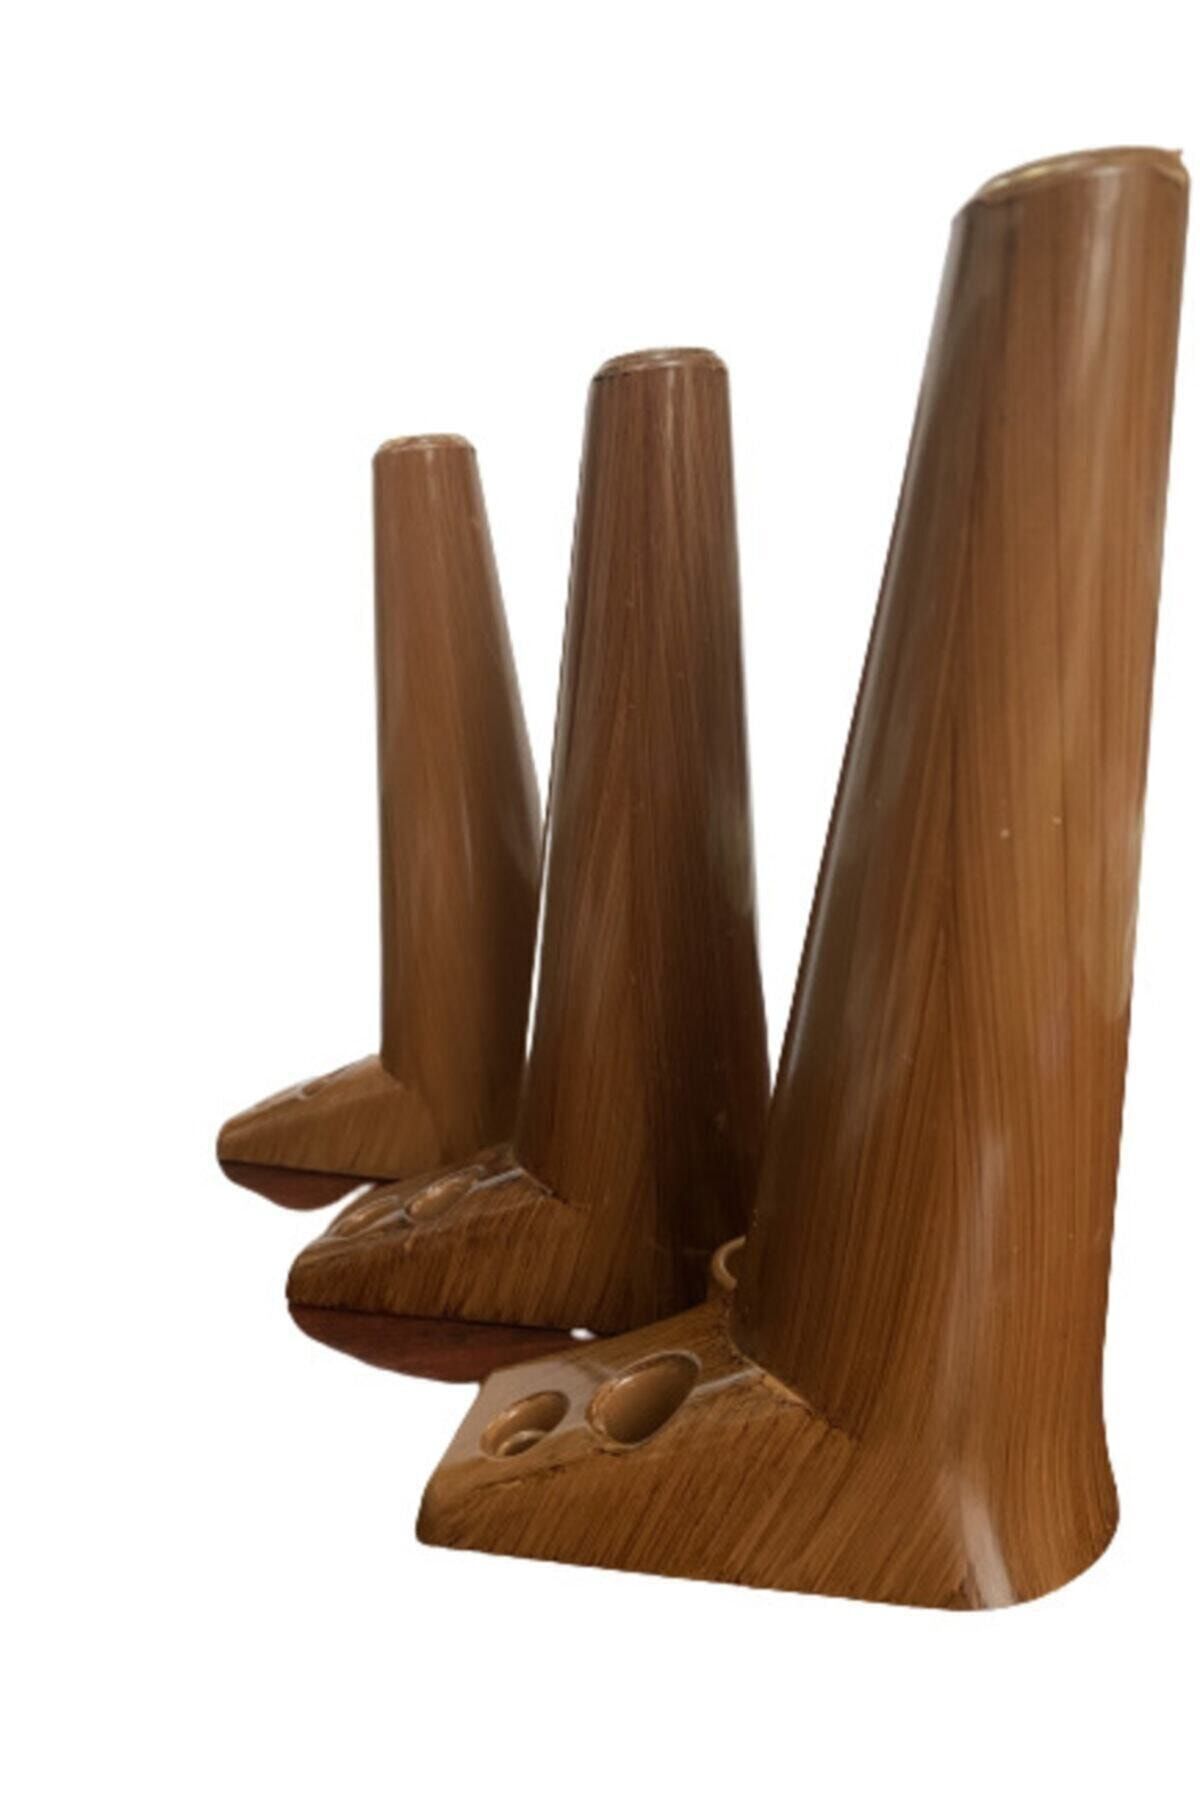 EnesBeyy L Tabanlı Kahverengi Zirve 20cm Ayak (2 Adet) Baza-sehpa-koltuk-kanepe-çekyat-dolap-mobilya Ayağı